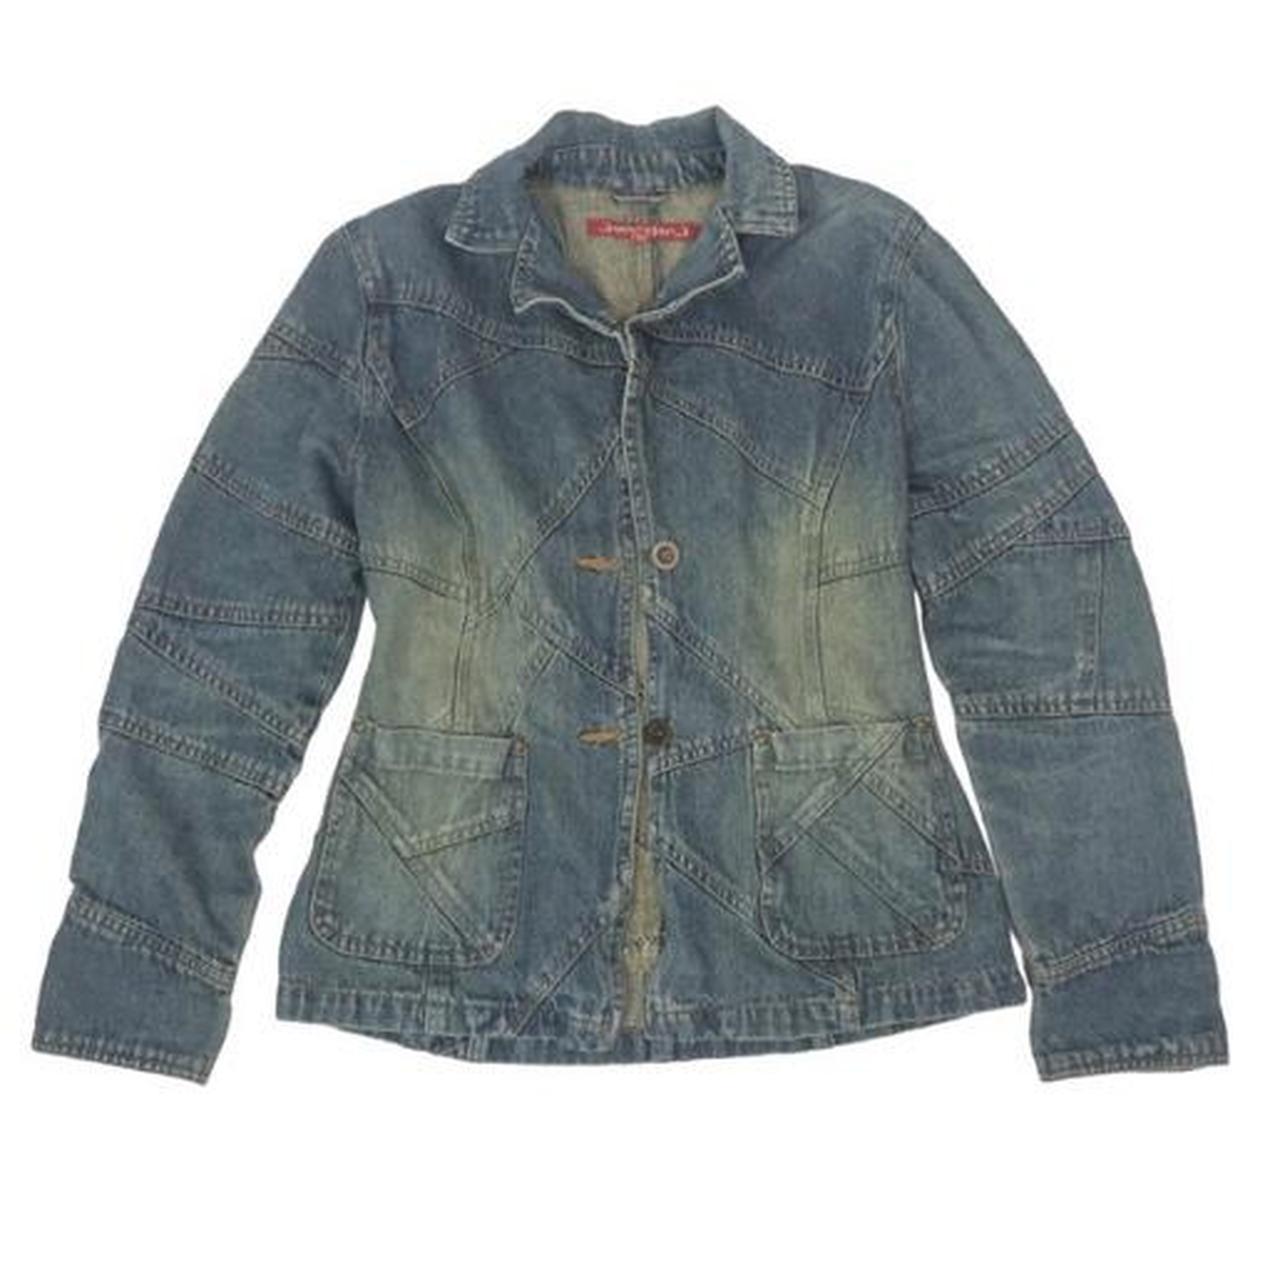 patchwork faded denim jacket from Jennyfer J fits... - Depop